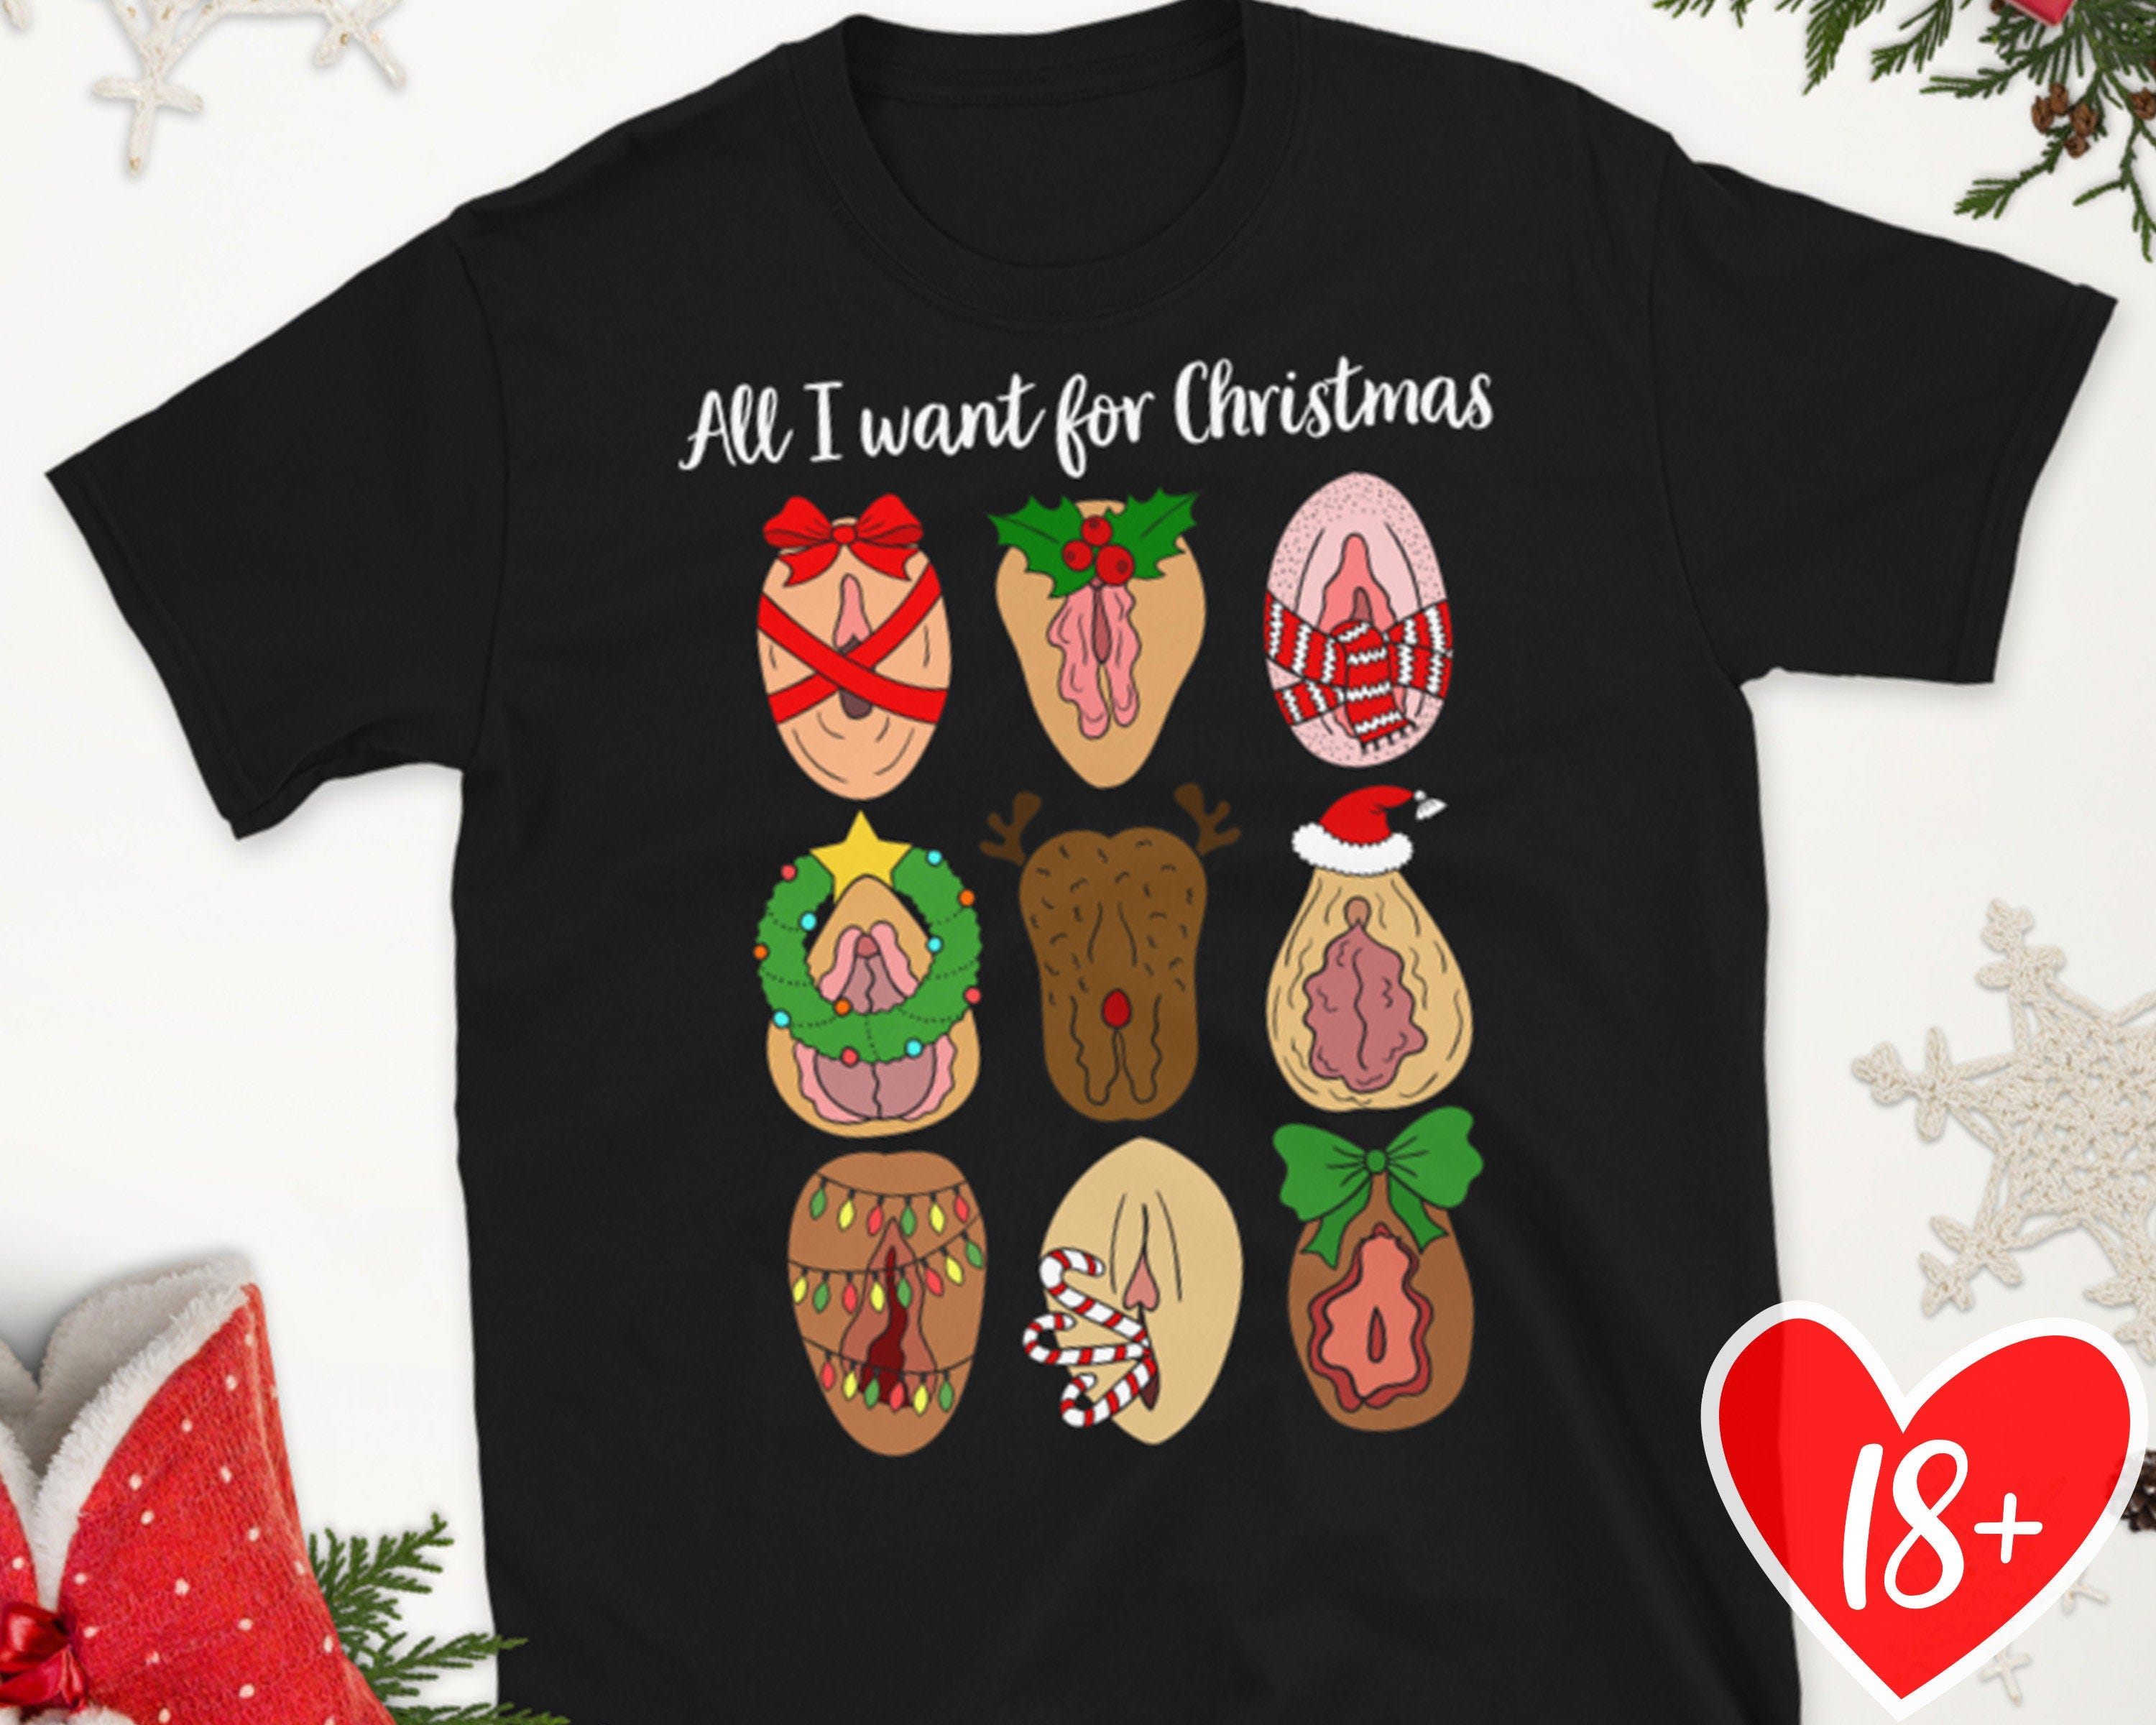 Ugly Christmas Shirts, Naughty Santa Shirt, Dirty Christmas, Funny Christmas Tee, Gift for Christmas, Secret Santa Gift, Matching Shirts